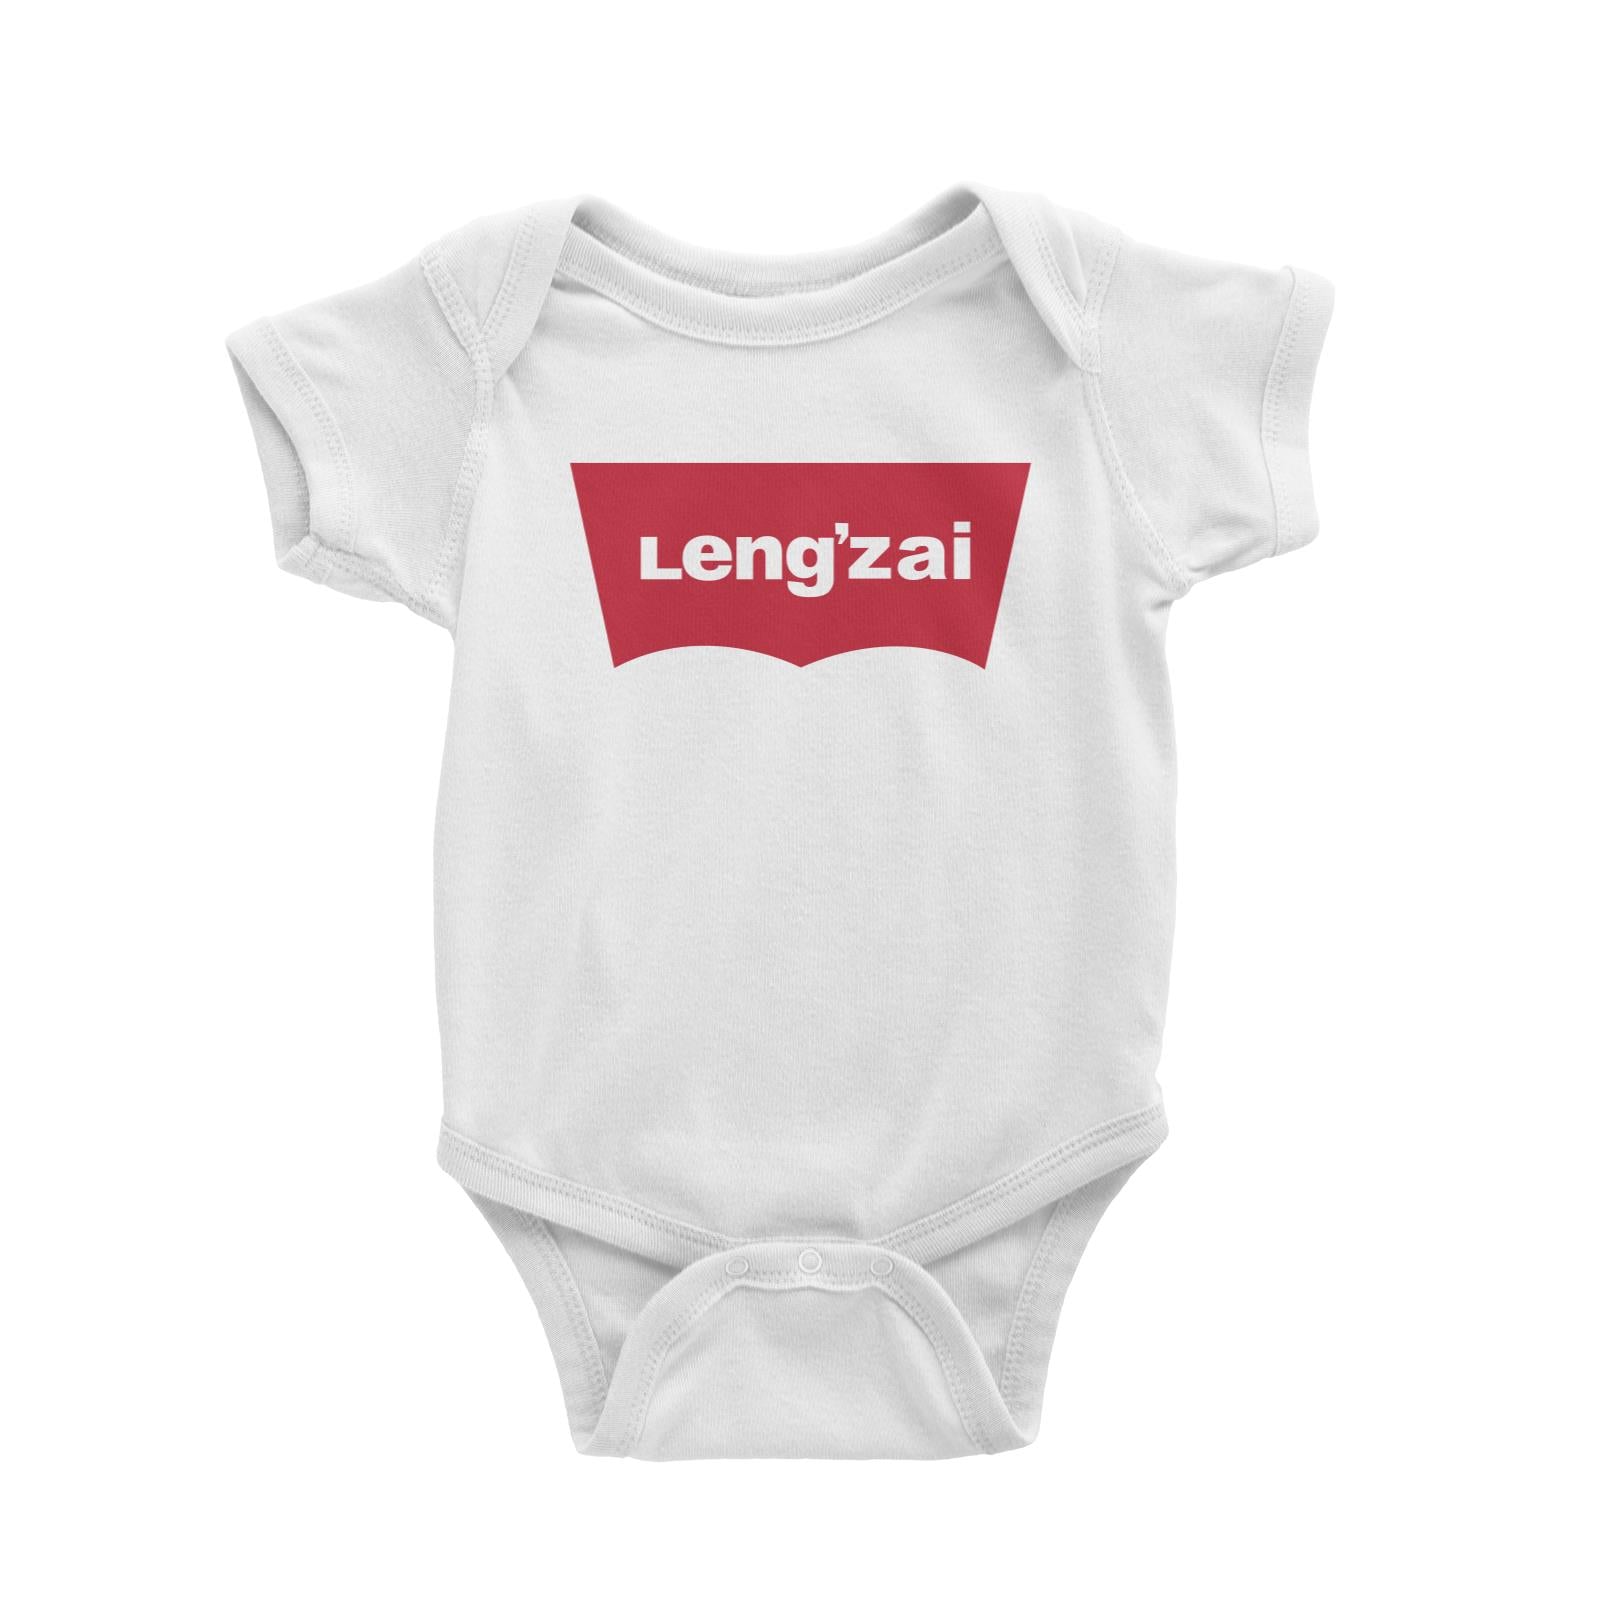 Slang Statement Lengzai Baby Romper